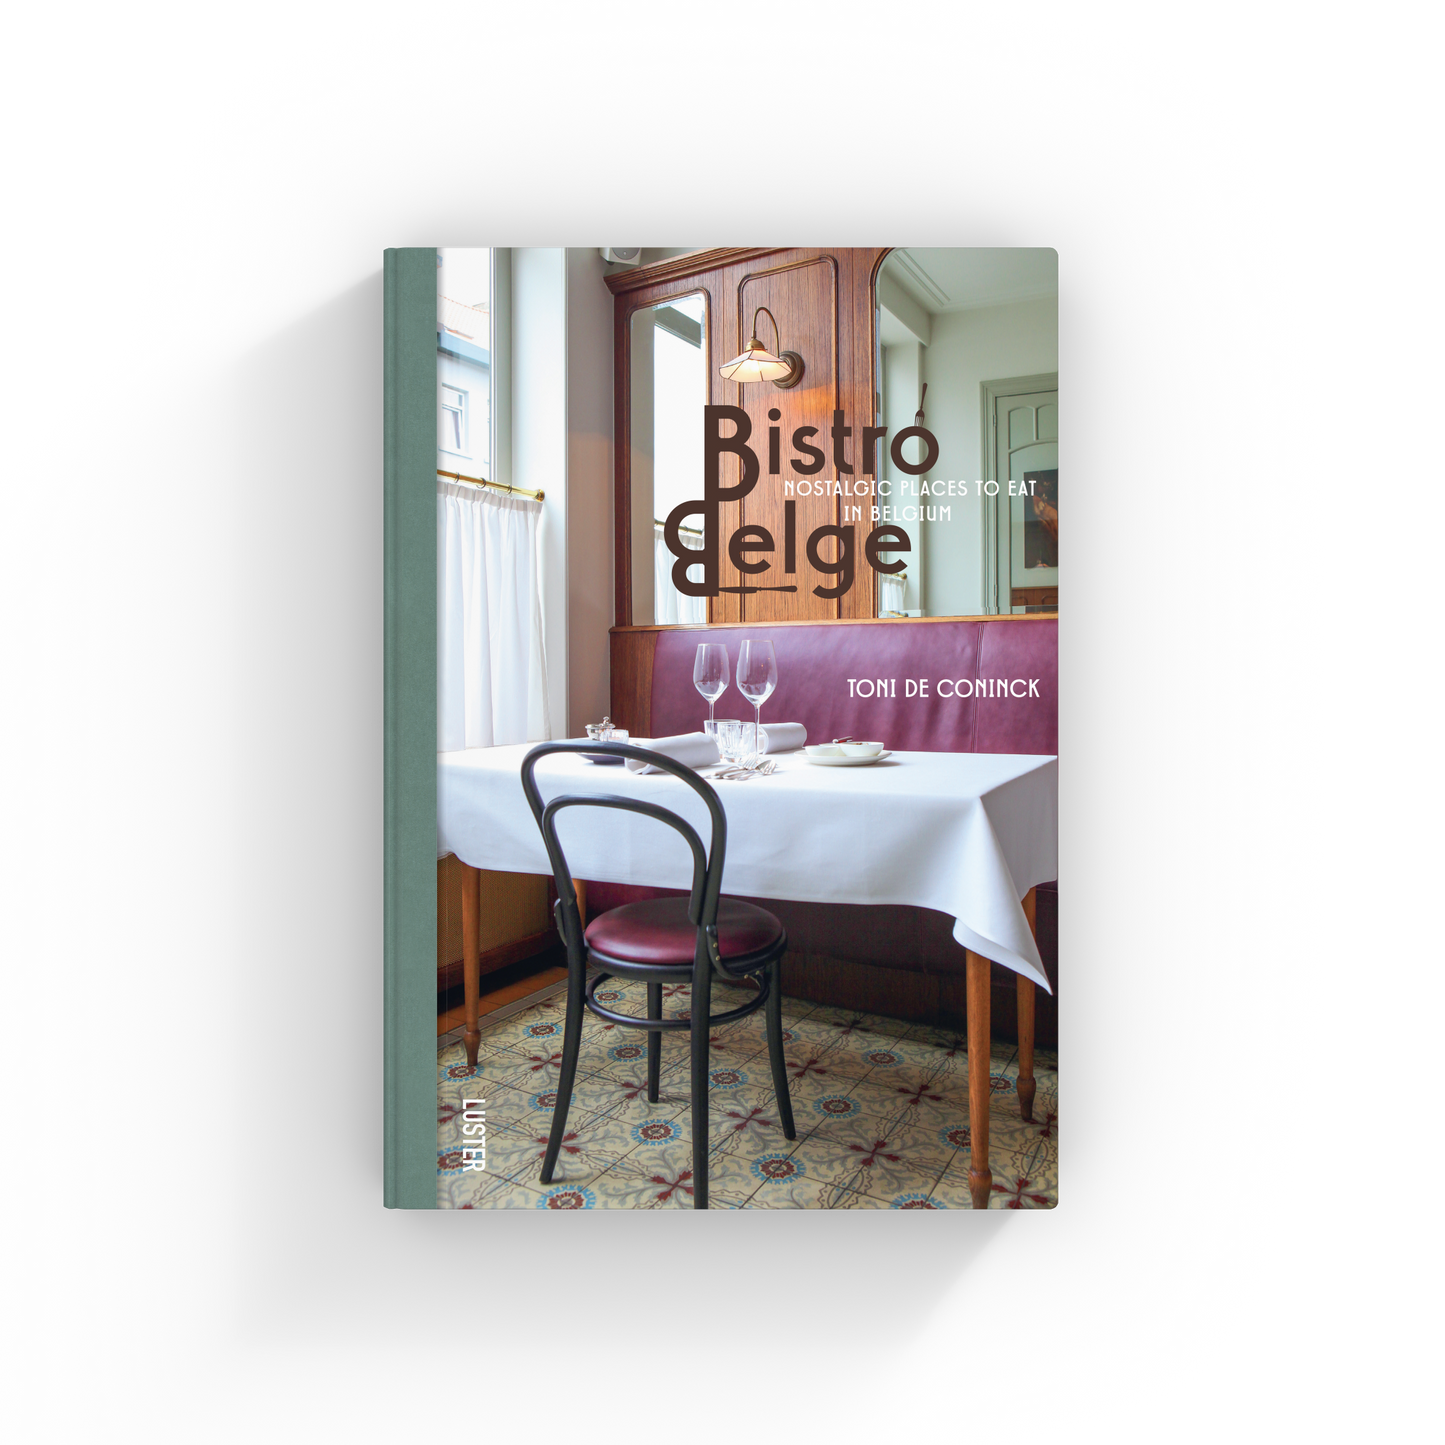 Bistro Belge - Nostalgic Places to Eat in Belgium